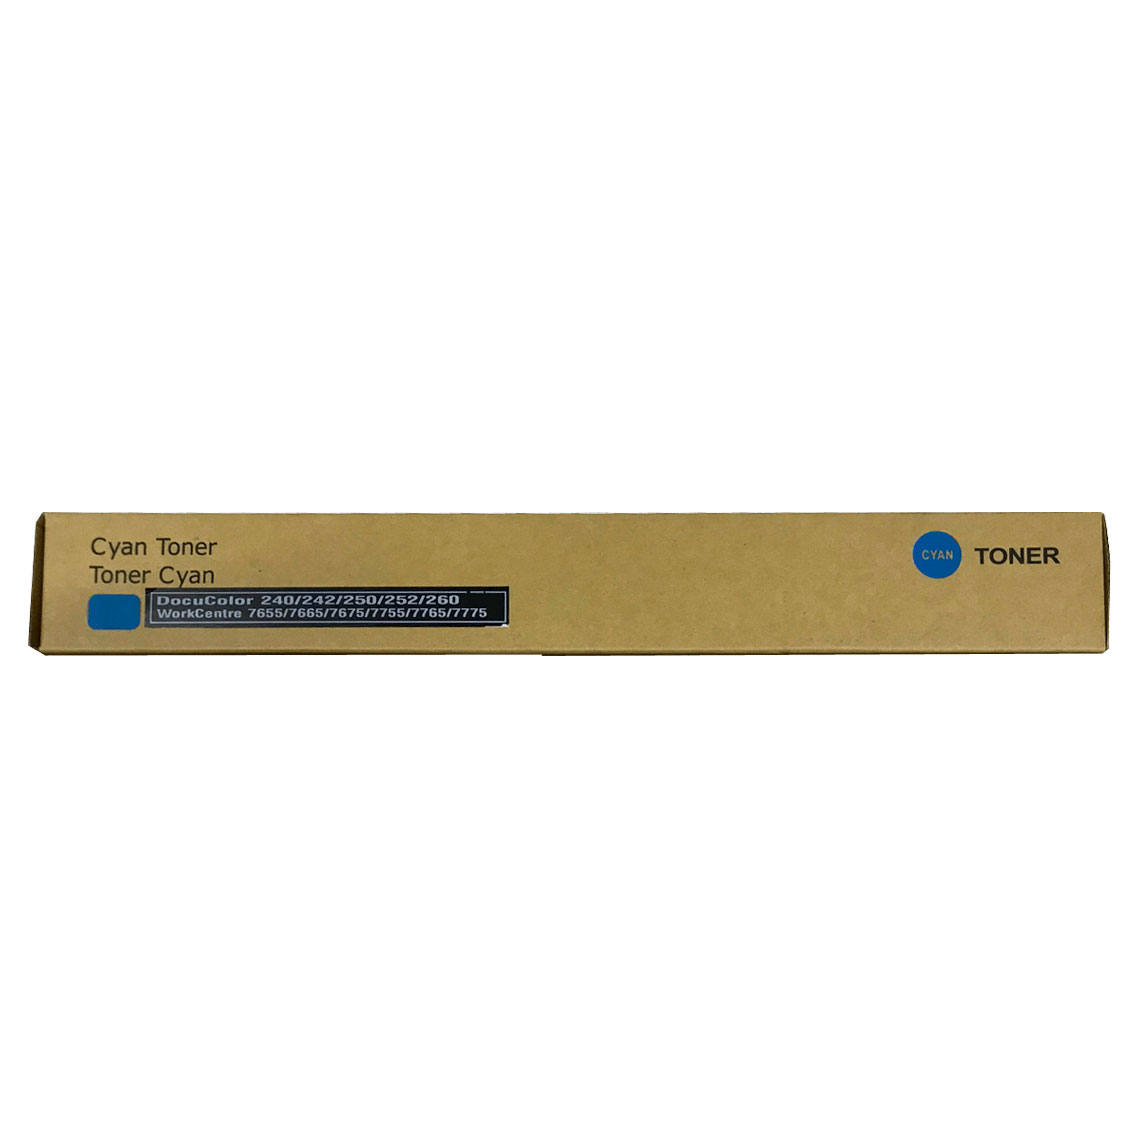 Тонер картридж голубой (Cyan) для XEROX DC 240/ 242/ 250/ 252/ 260 (006R01452, 006R01226). Фото №2